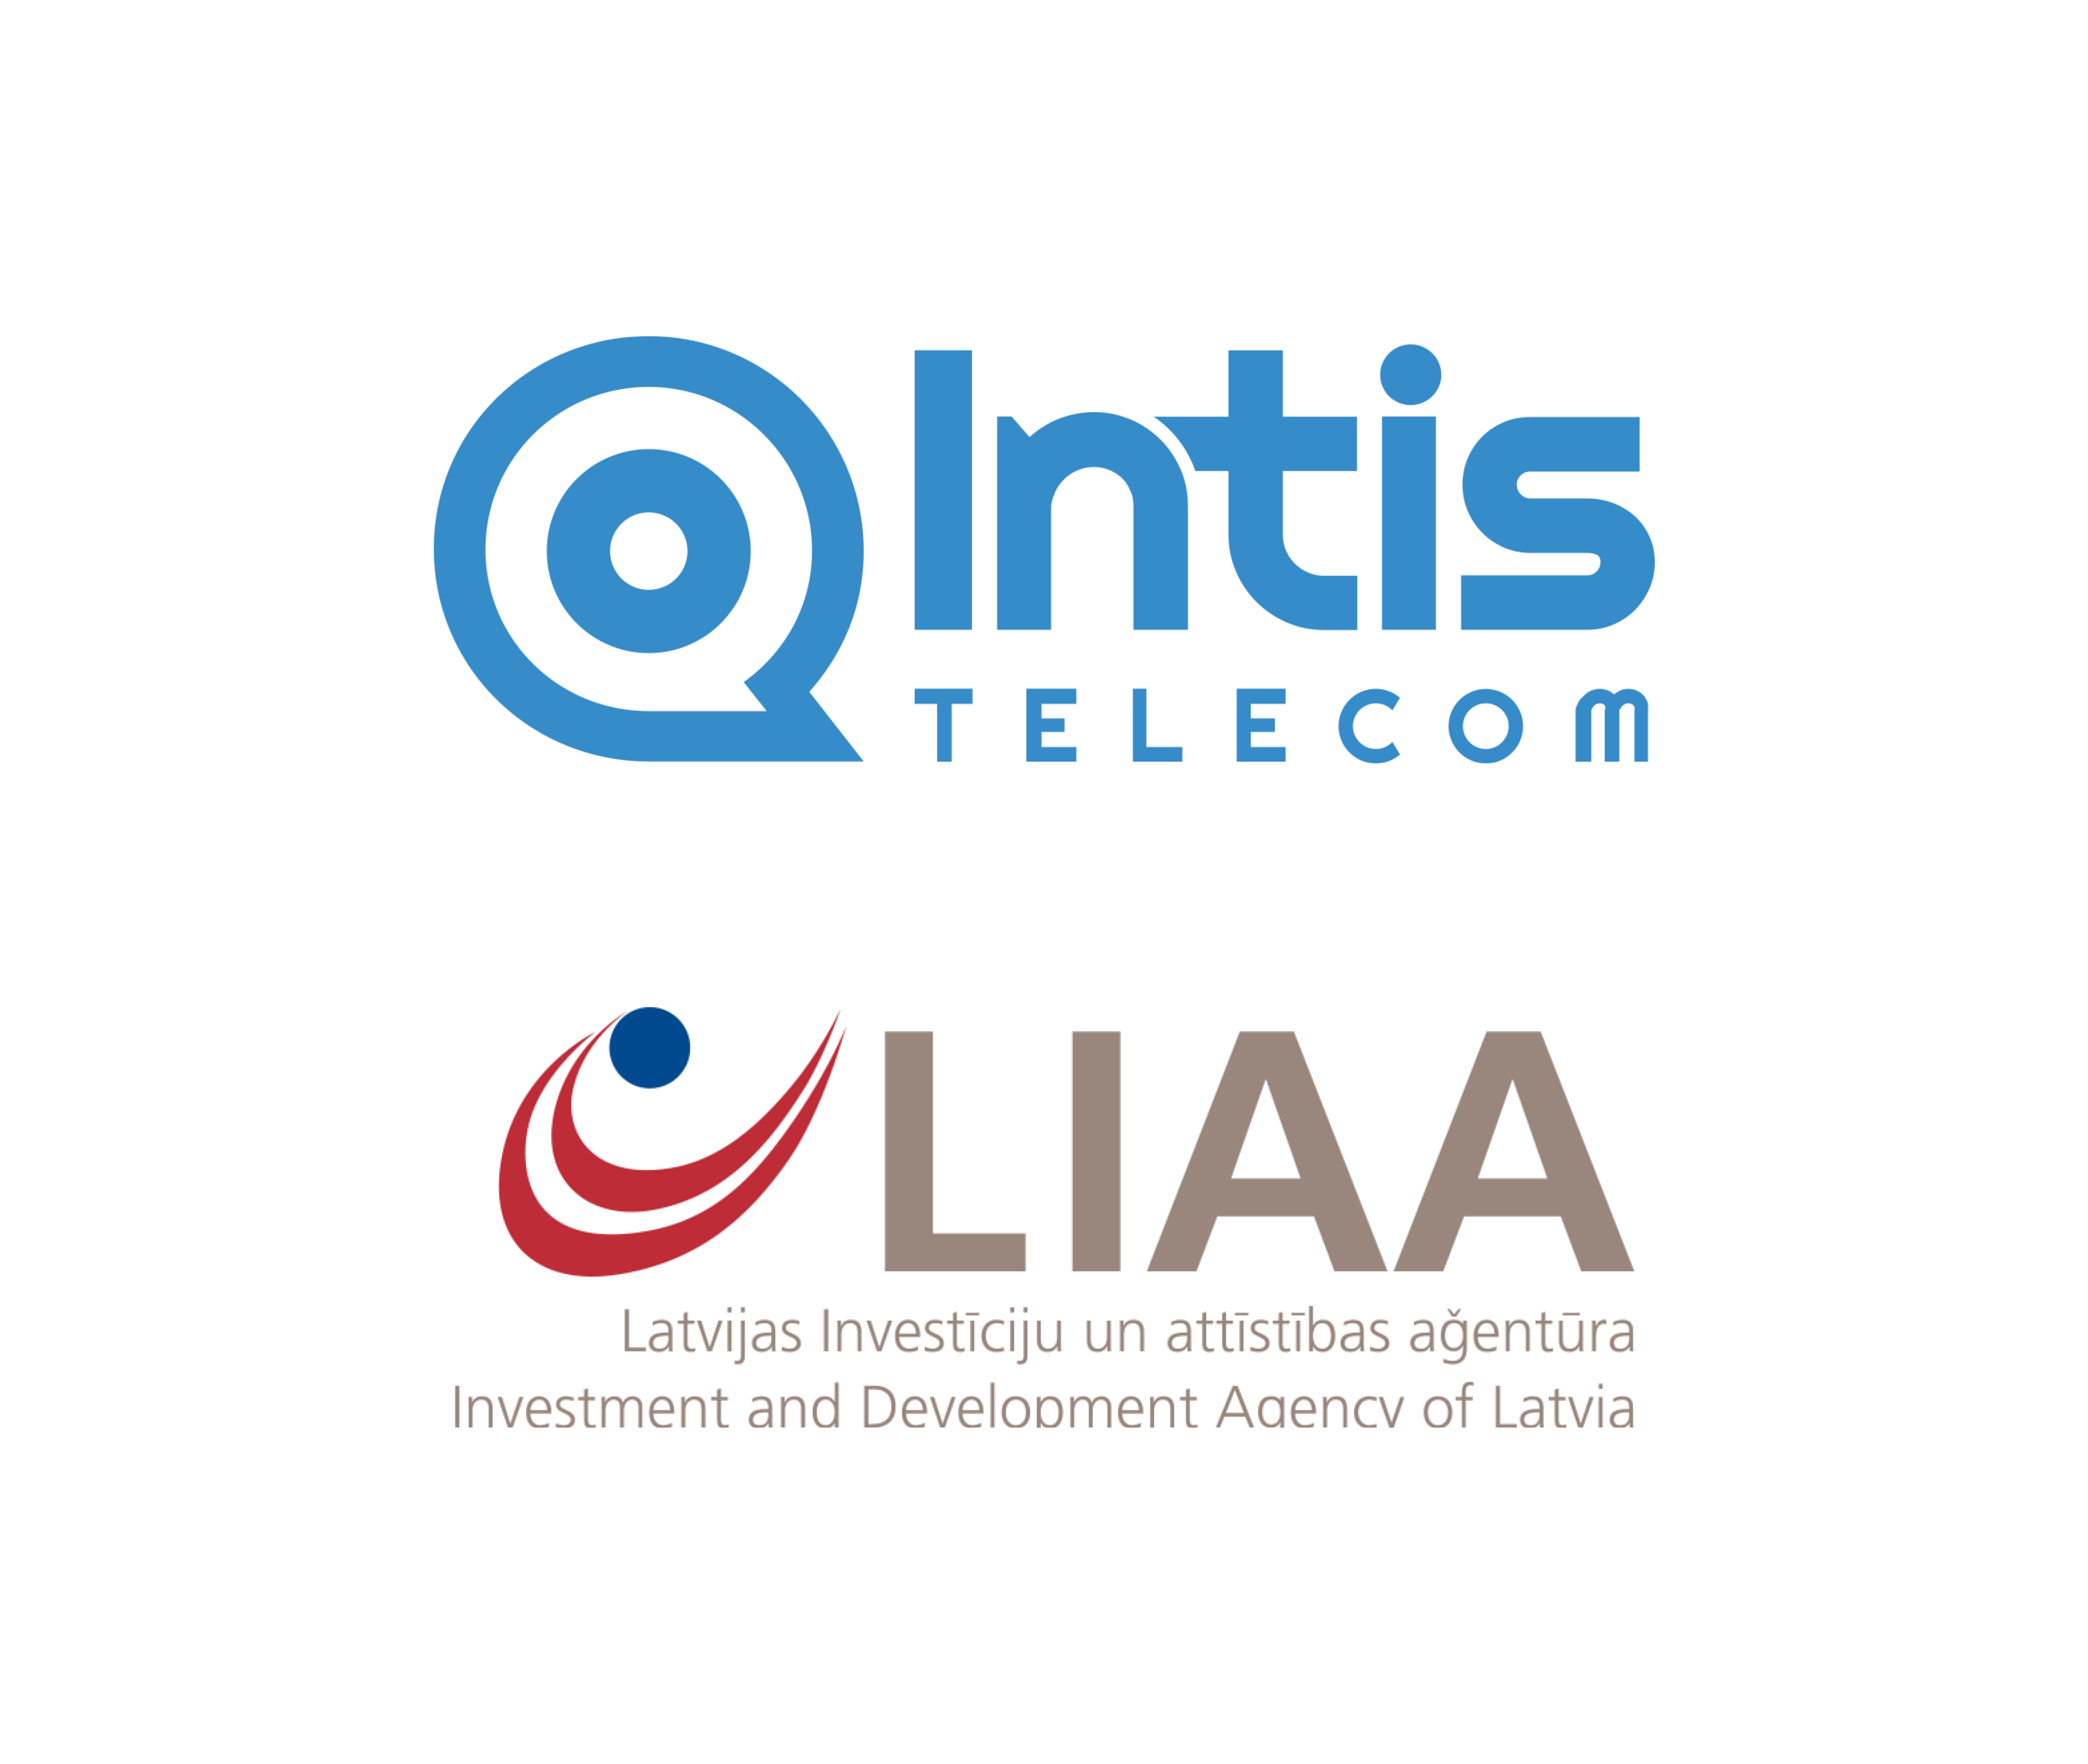 Initis Telecom's logo